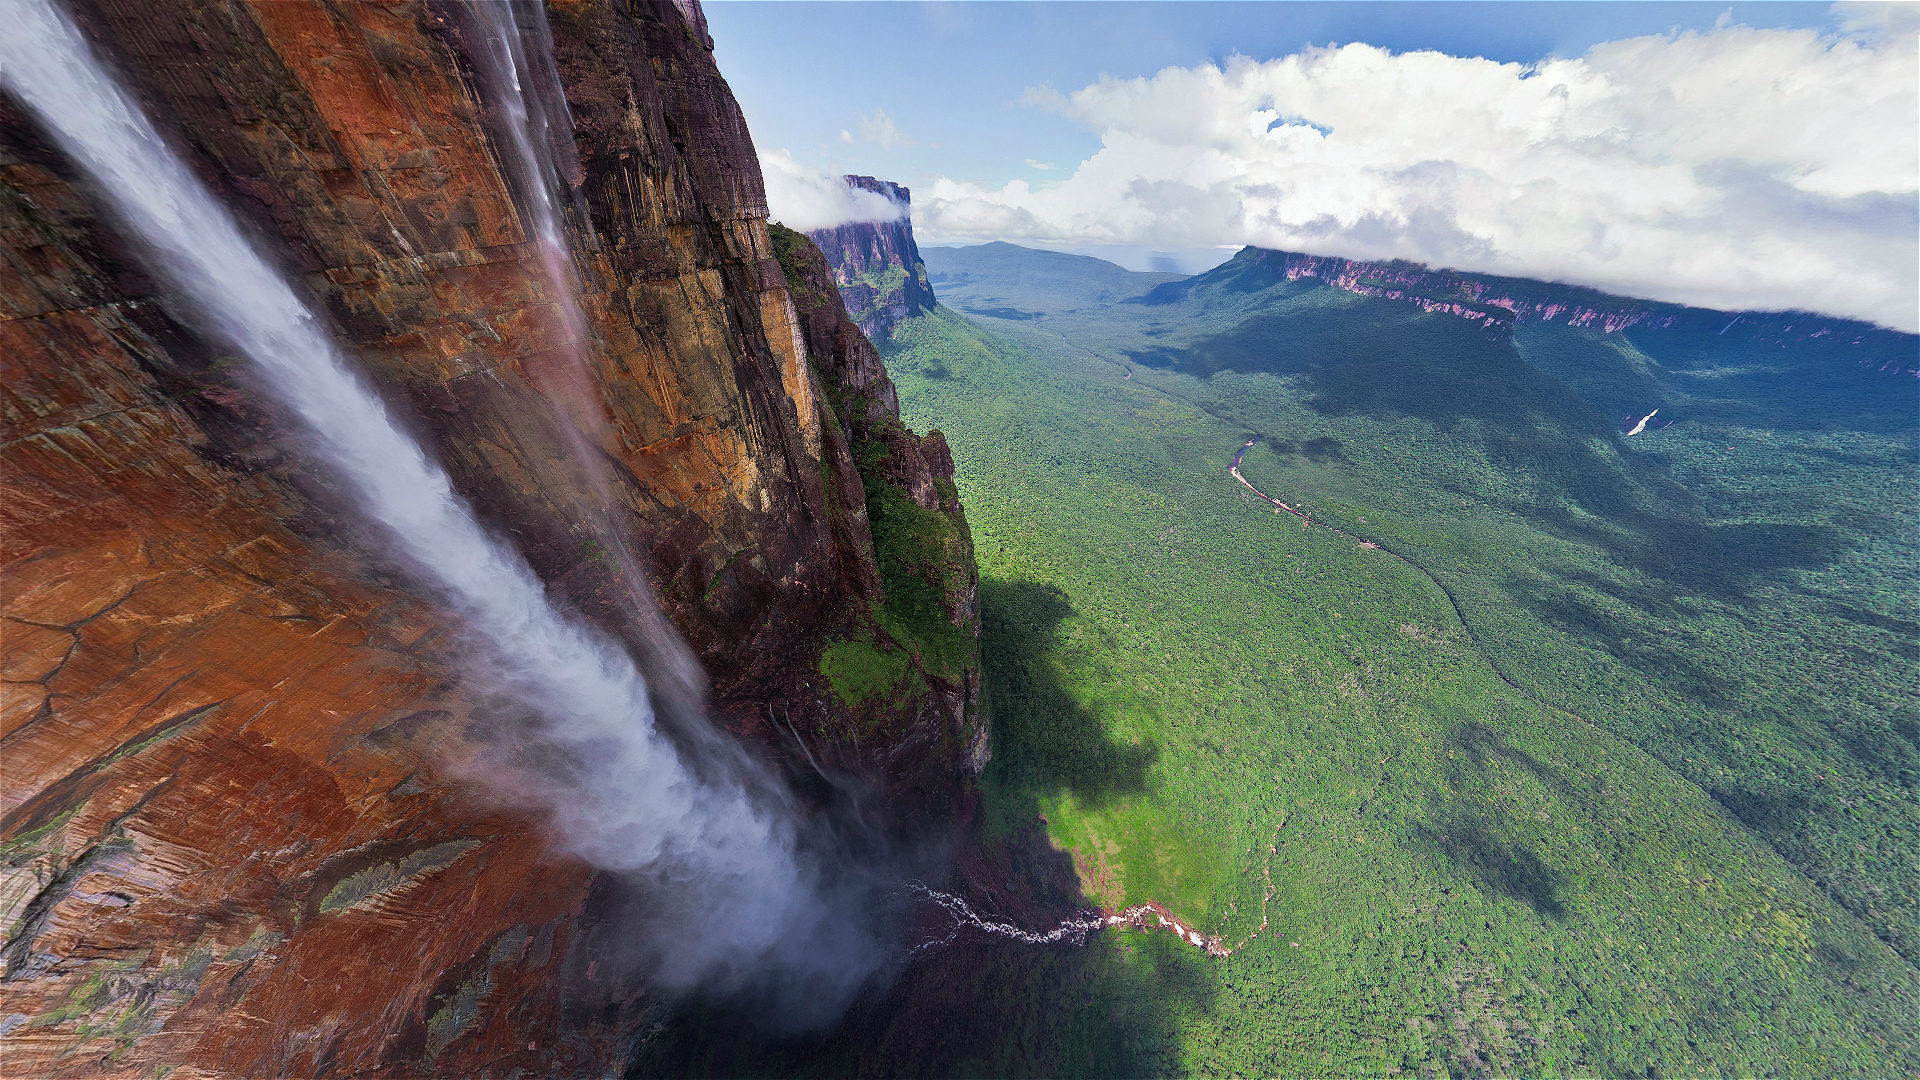 Hd desktop waterfalls mountain waterfall earth cliff venezuela angel falls download free picture